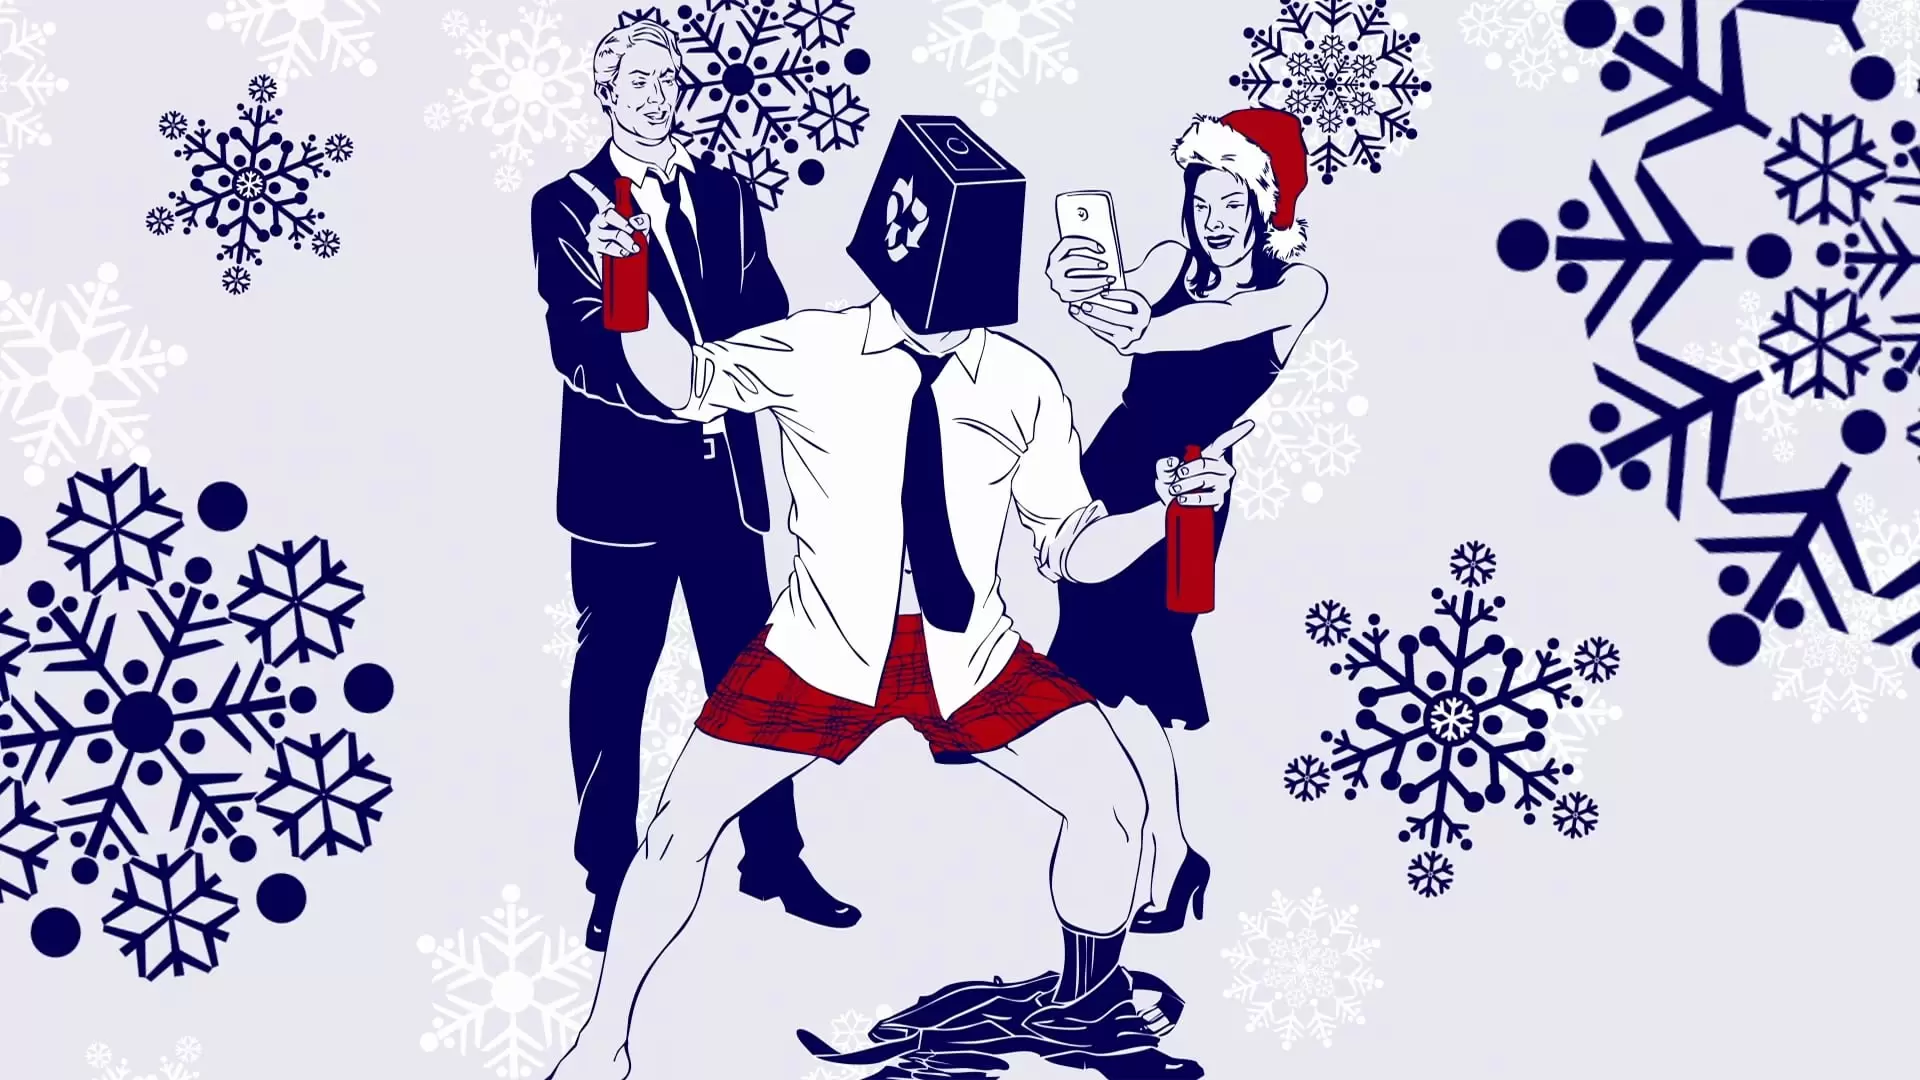 دانلود فیلم Office Christmas Party 2016 (مهمانی کریسمس اداره) با زیرنویس فارسی و تماشای آنلاین